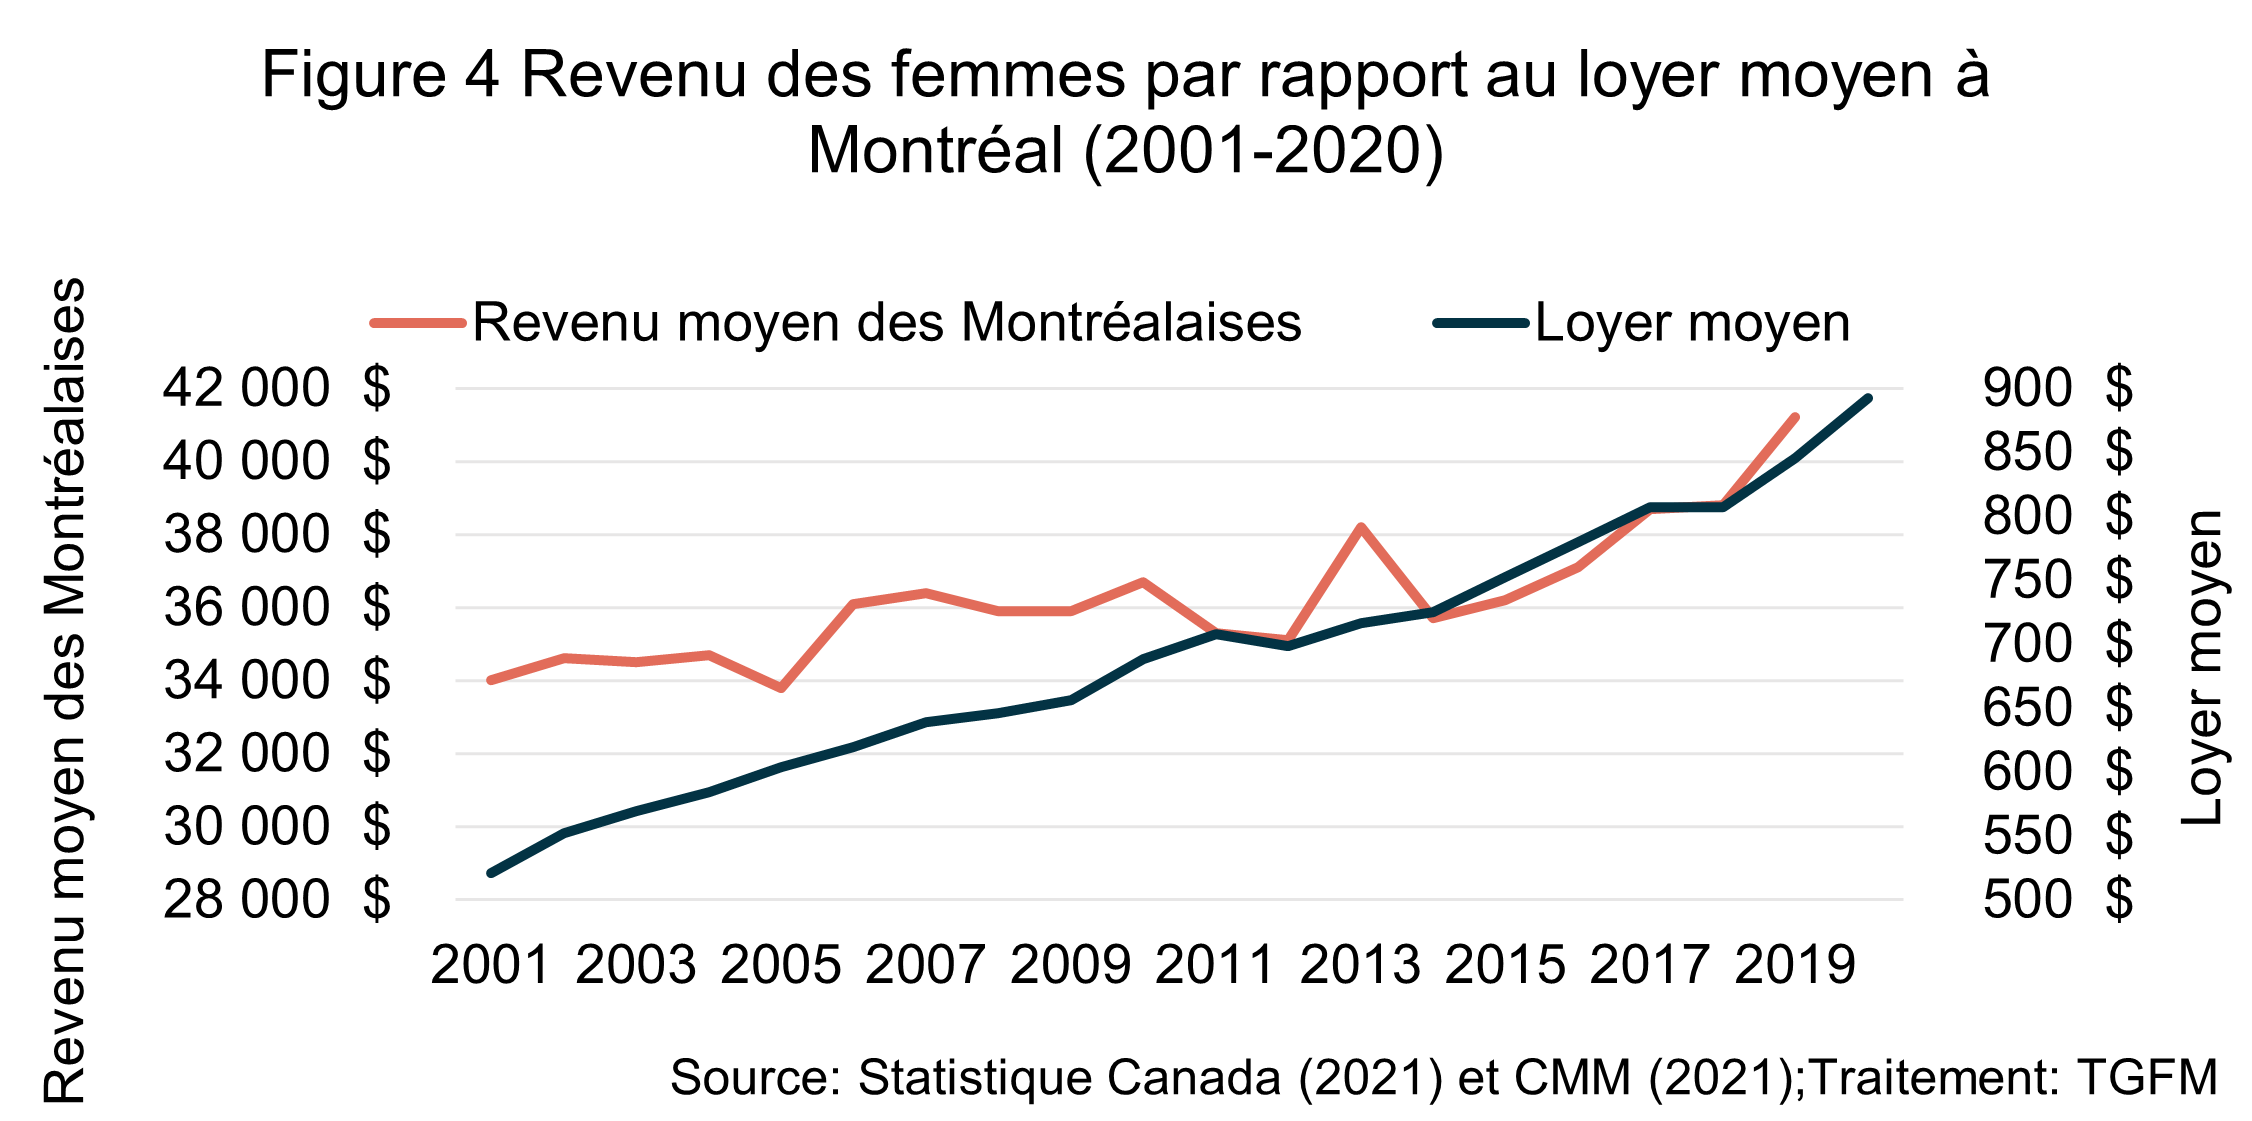 La figure illustre l'évolution du revenu moyen des Montréalaises avec le loyer moyen entre 2001 et 2020. Les courbes du graphique illustrent que le loyer augmente plus rapidement que le revenu.